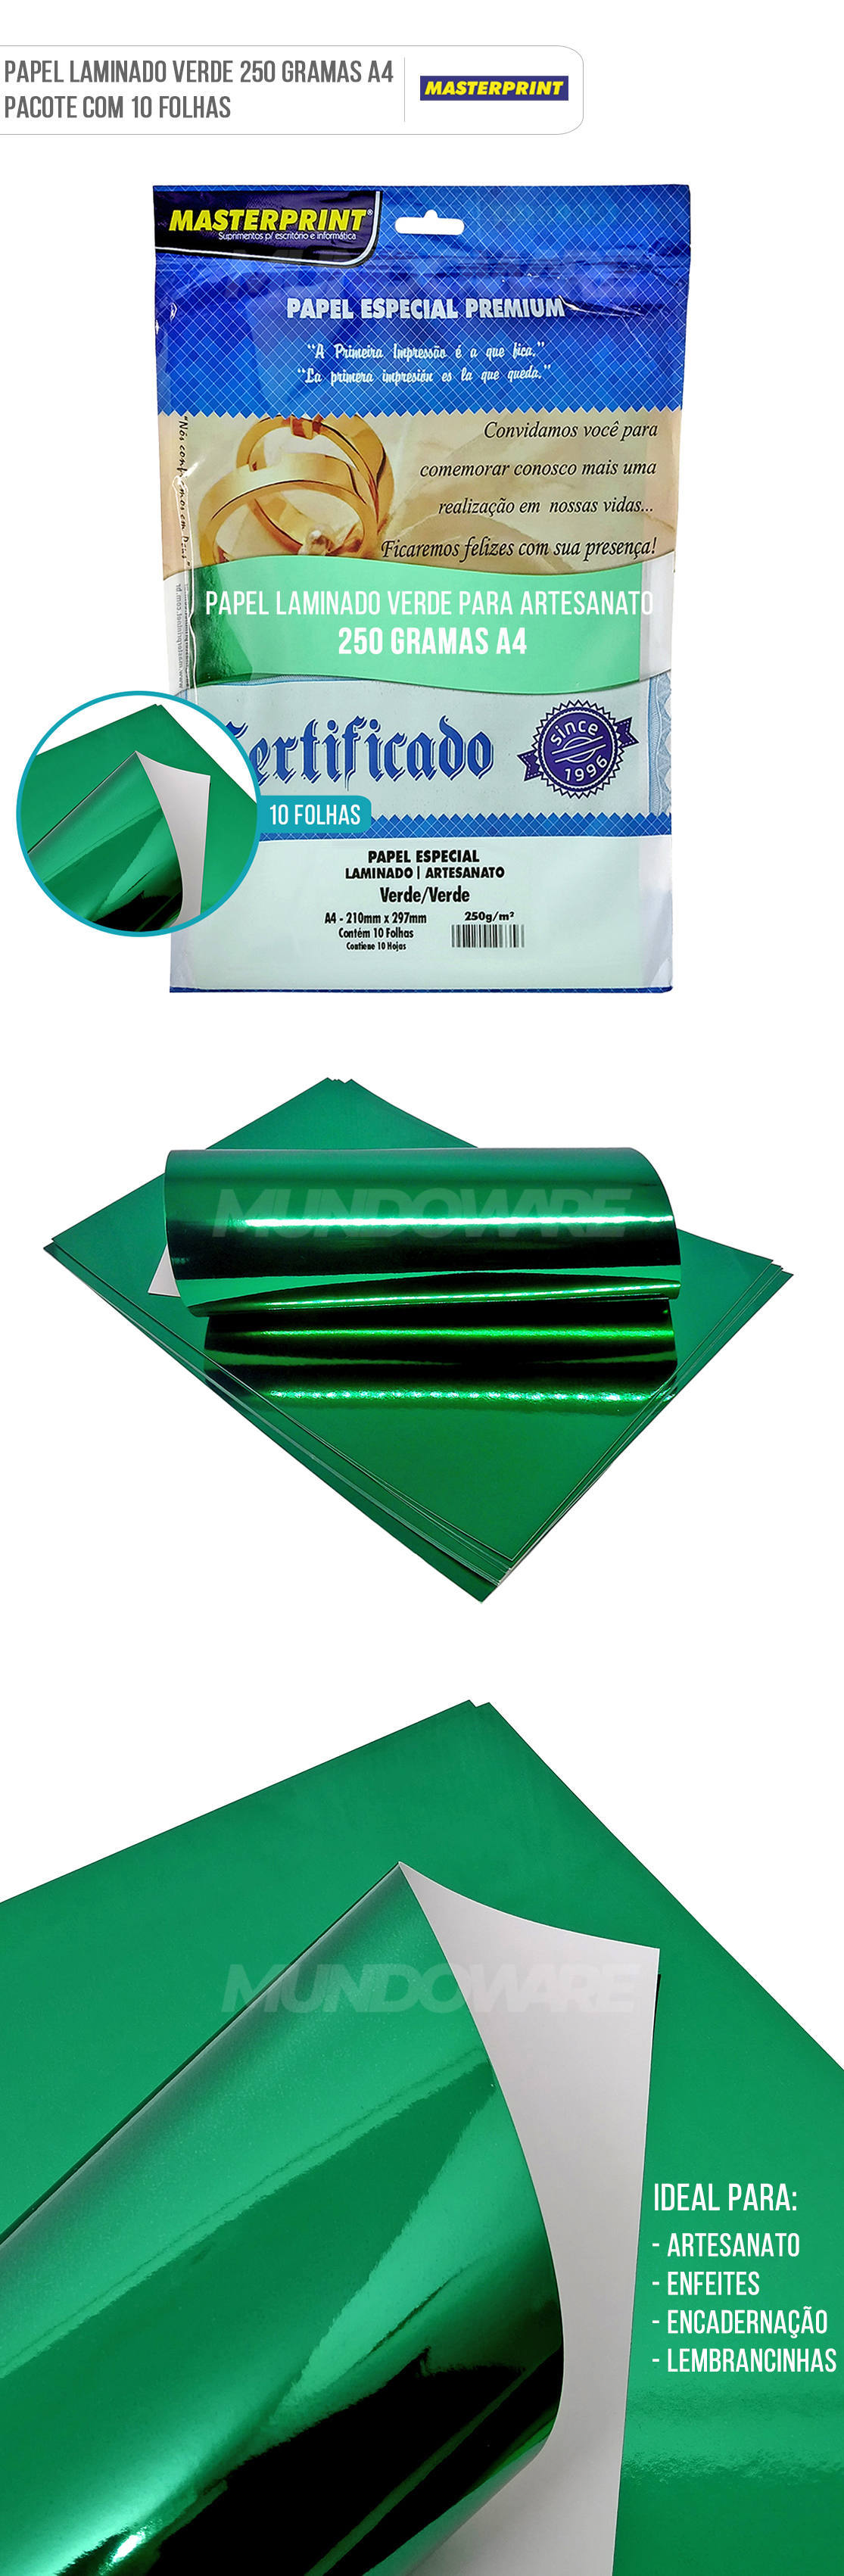 Papel Laminado Verde A4 250g para Artesanato Enfeites Lembrancinhas Pacote com 10 Folhas Masterprint